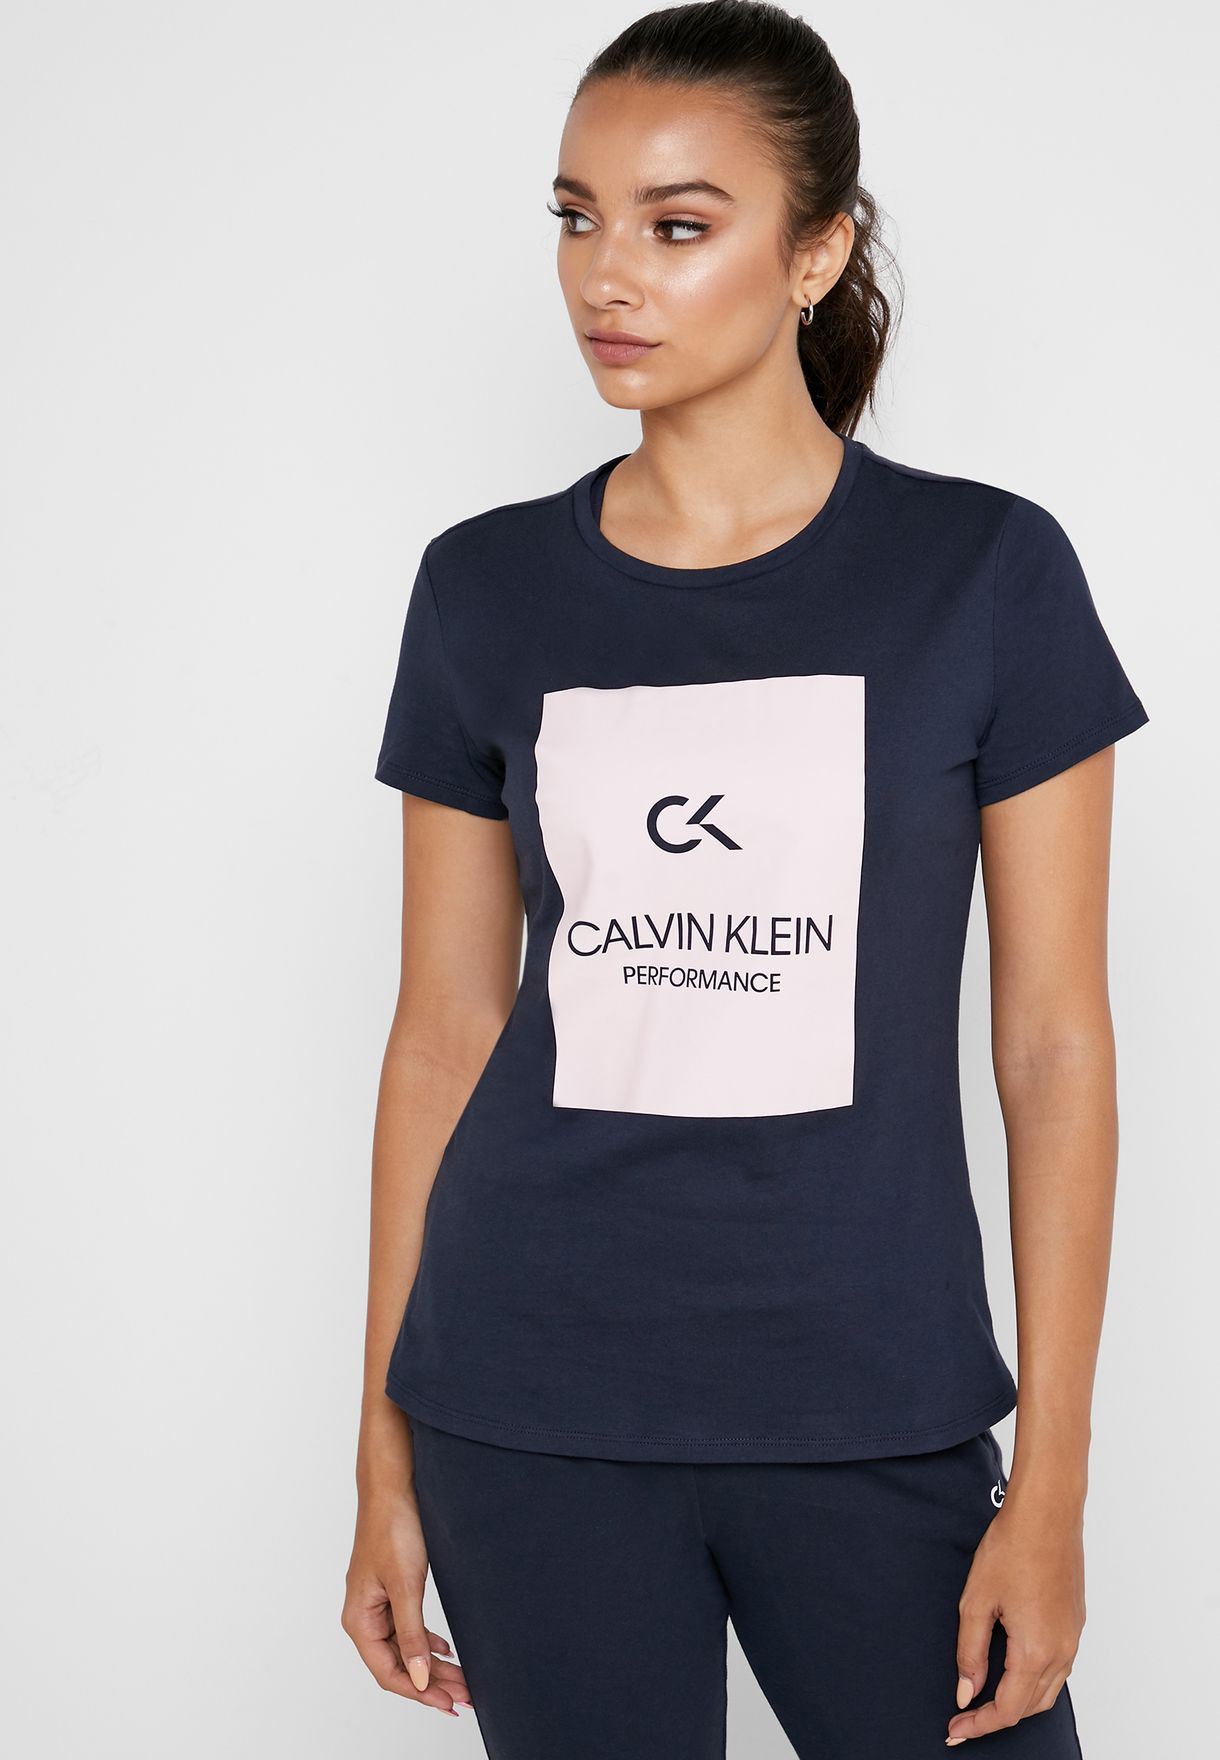 calvin klein t shirt womens sale